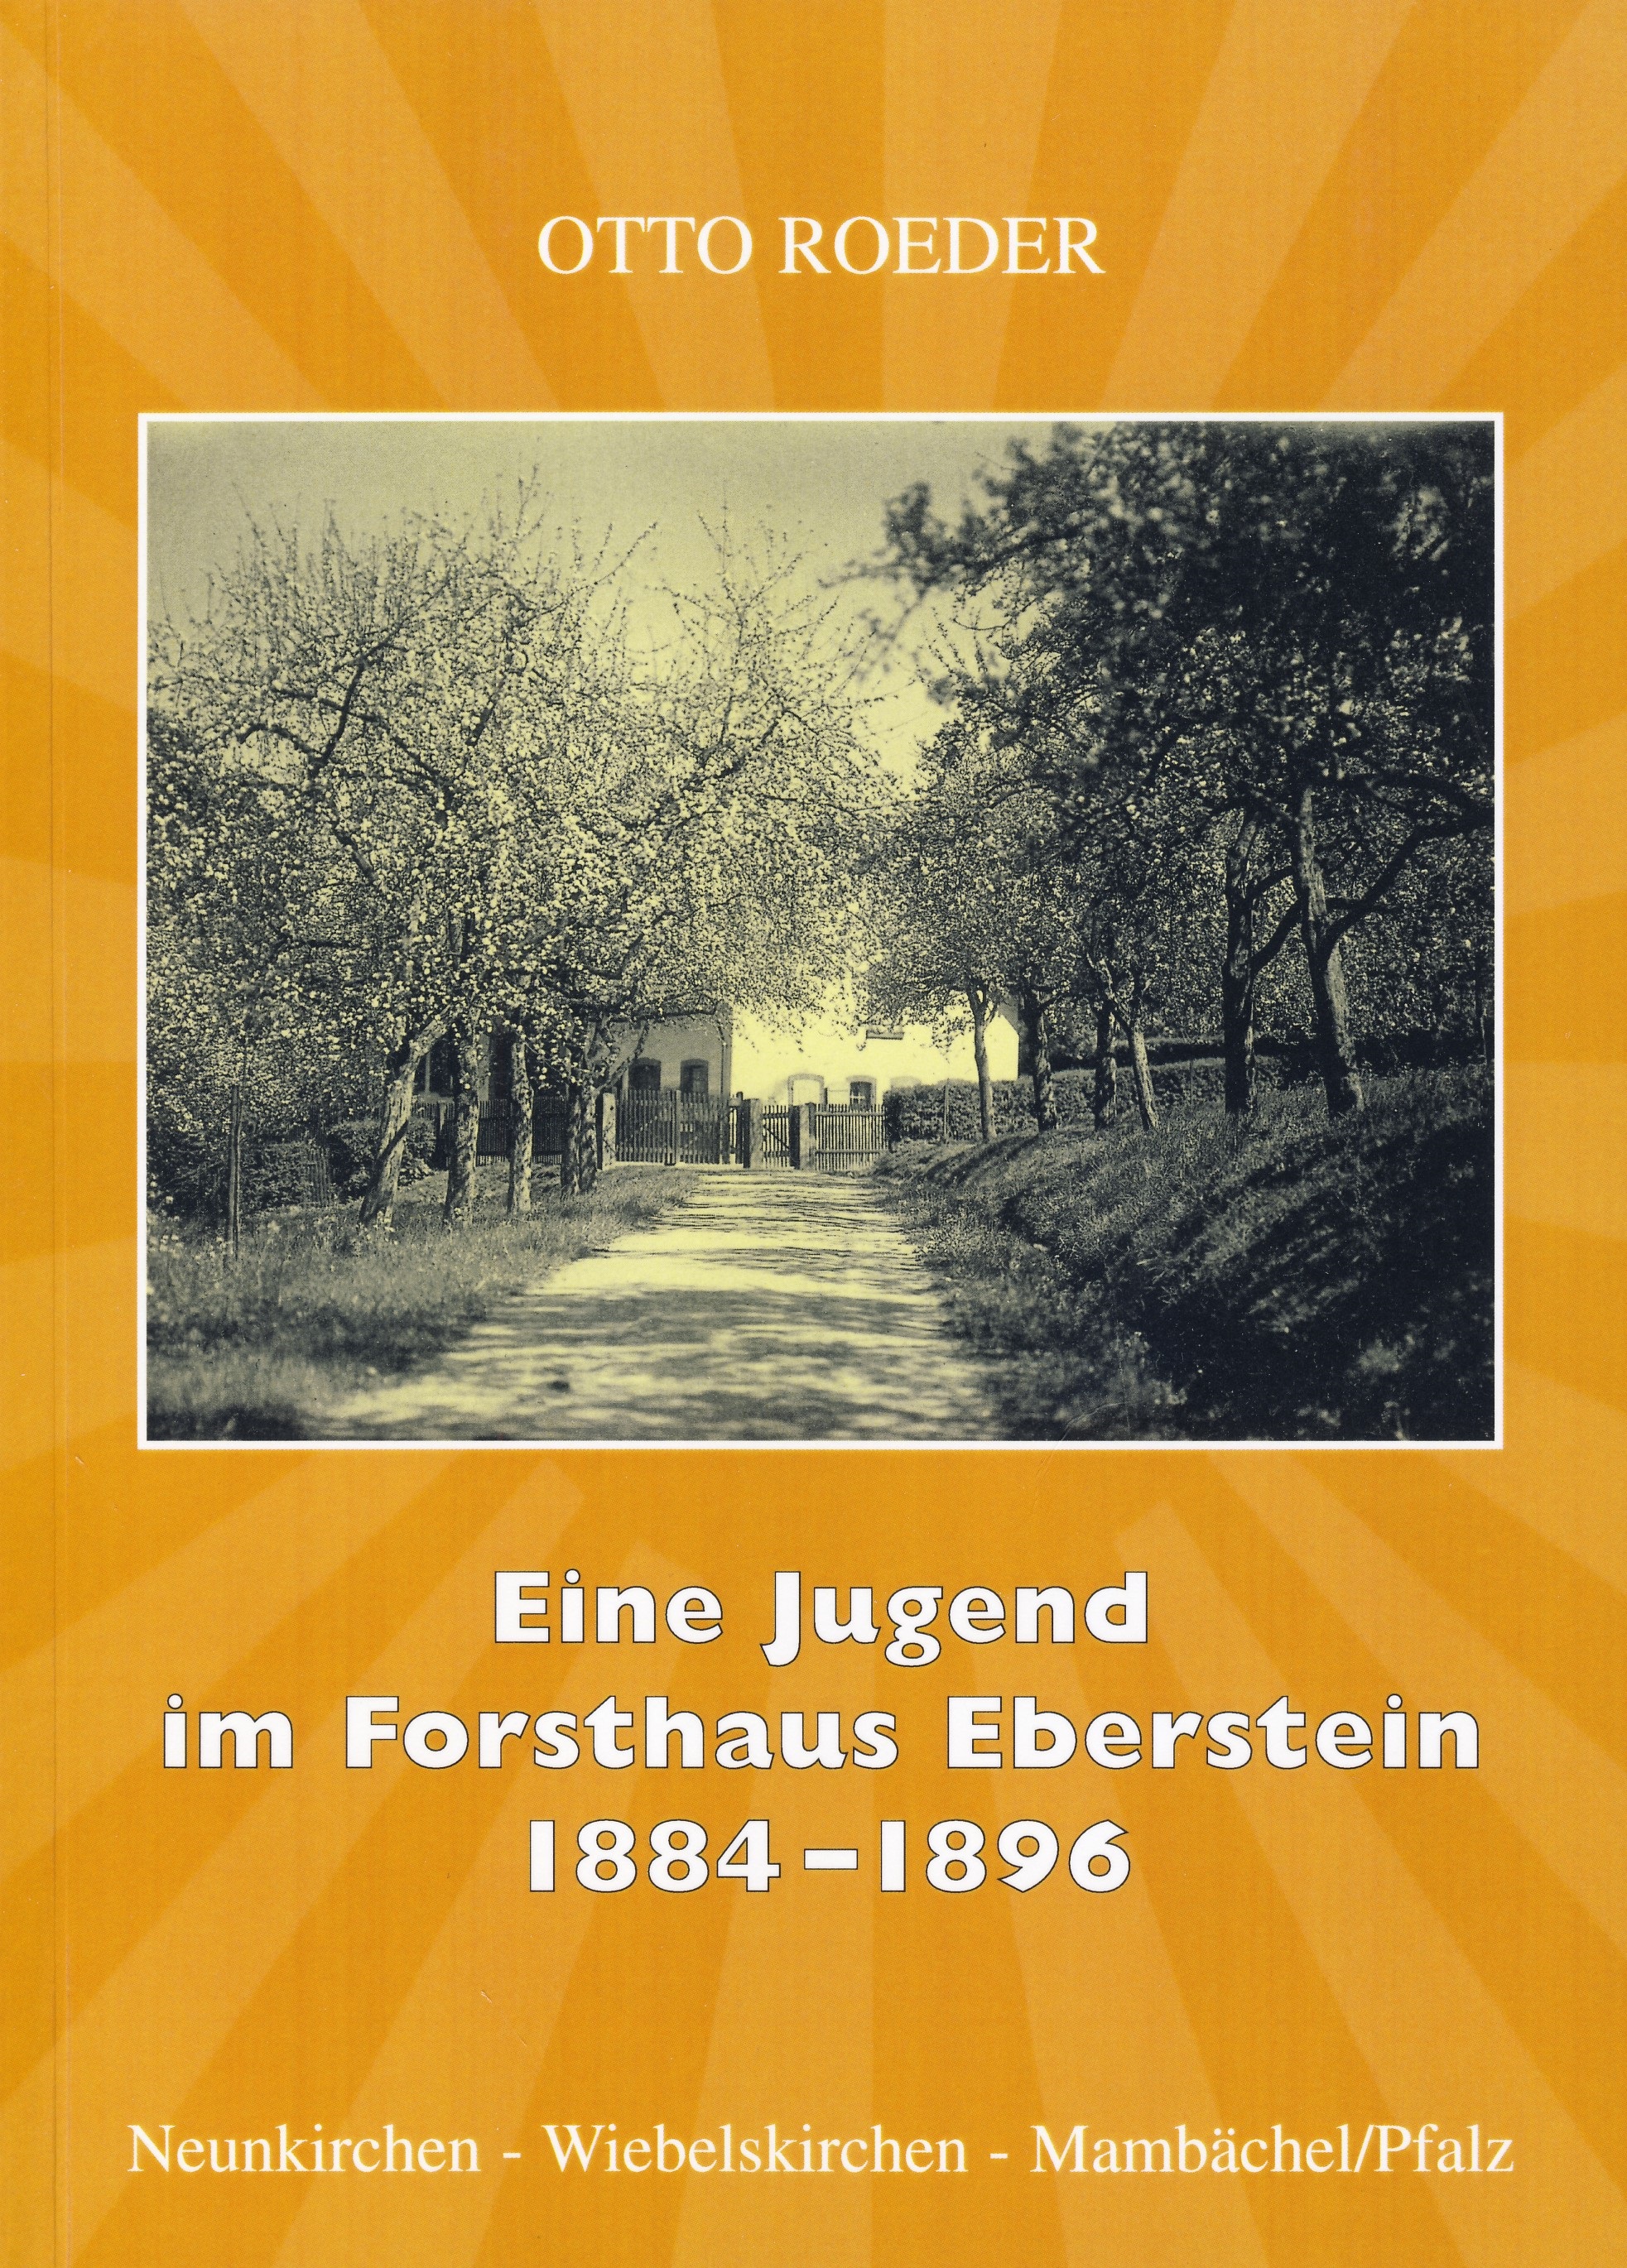 Bild "Startseite:Jugend_Eberstein.jpg"